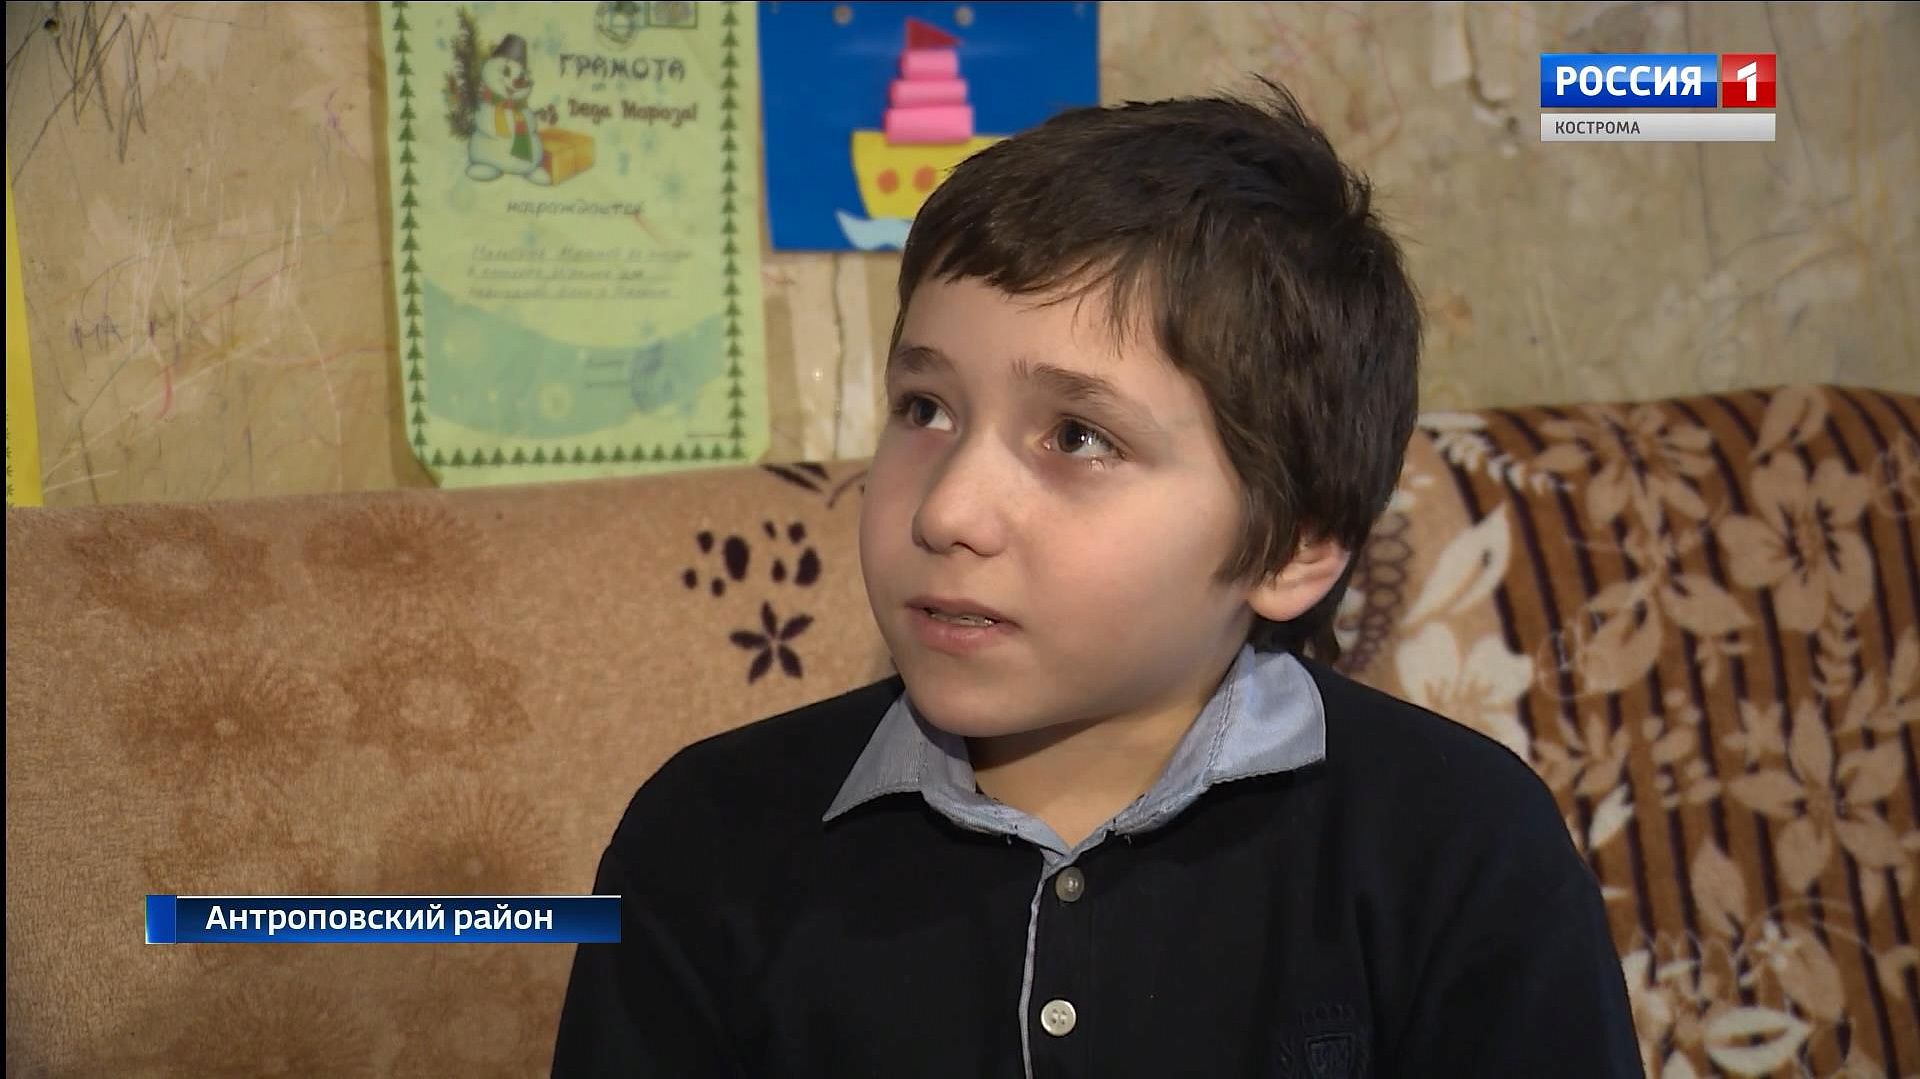 Костромичи могут помочь 11-летнему мальчику победить редкую болезнь